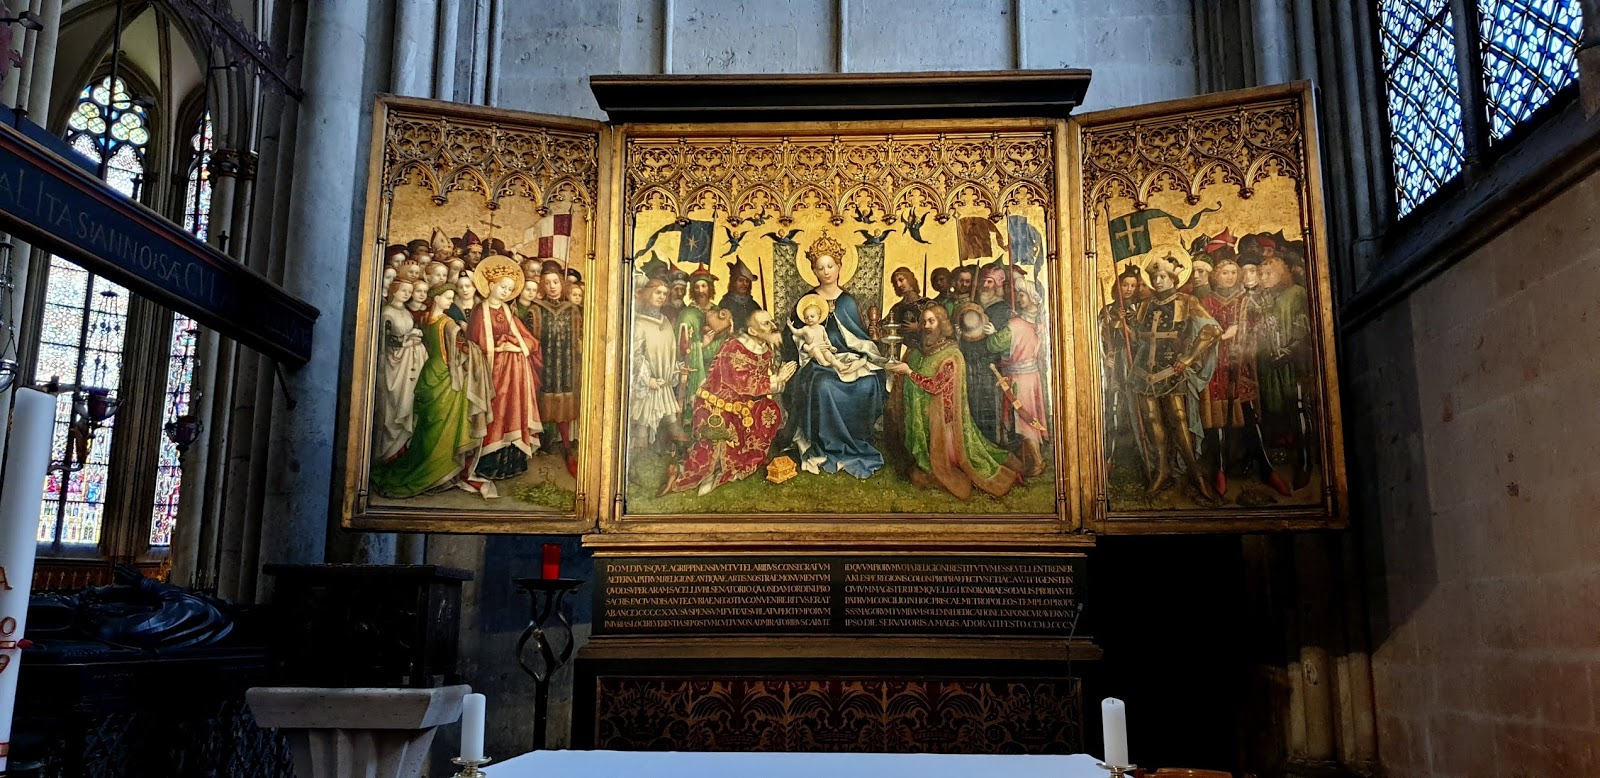 Св ц. Штефан Лохнер алтарь домбильда (алтарь трех волхвов) (1445). Главный алтарь кёльнского собора.